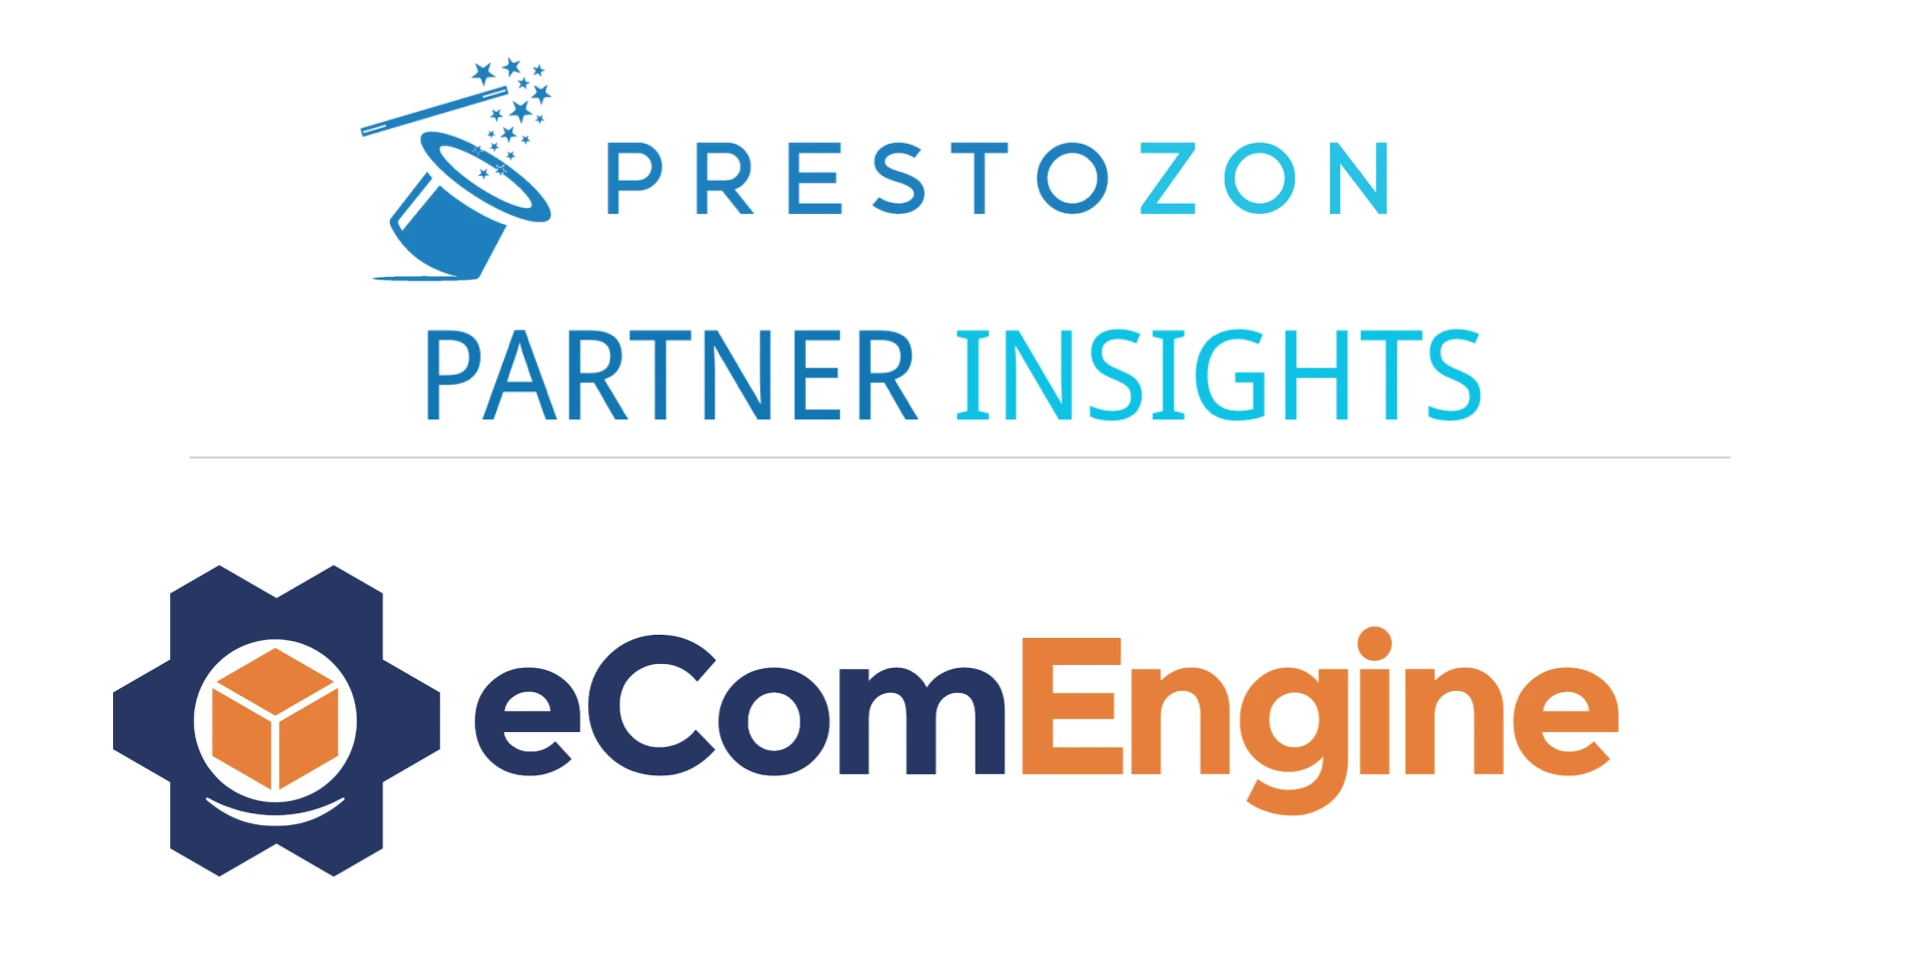 prestozon and eCom engine